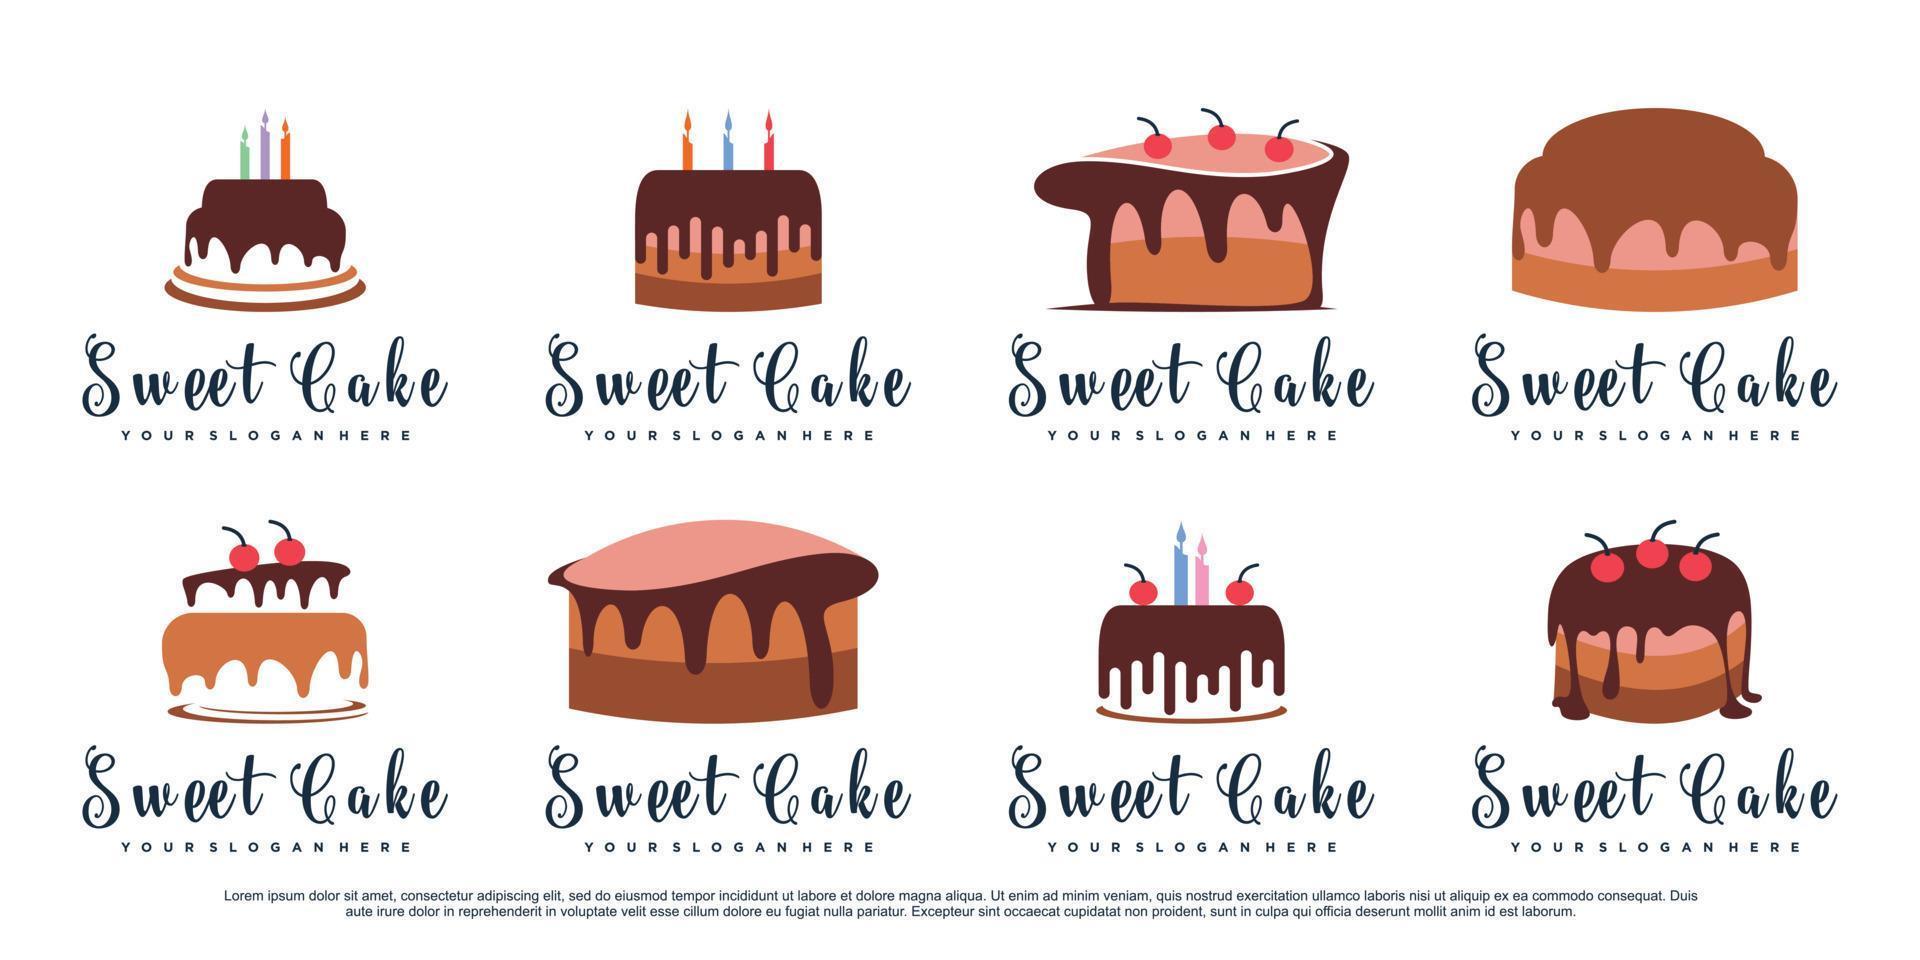 conjunto de modelo de design de logotipo de bolo doce com vetor premium de conceito criativo